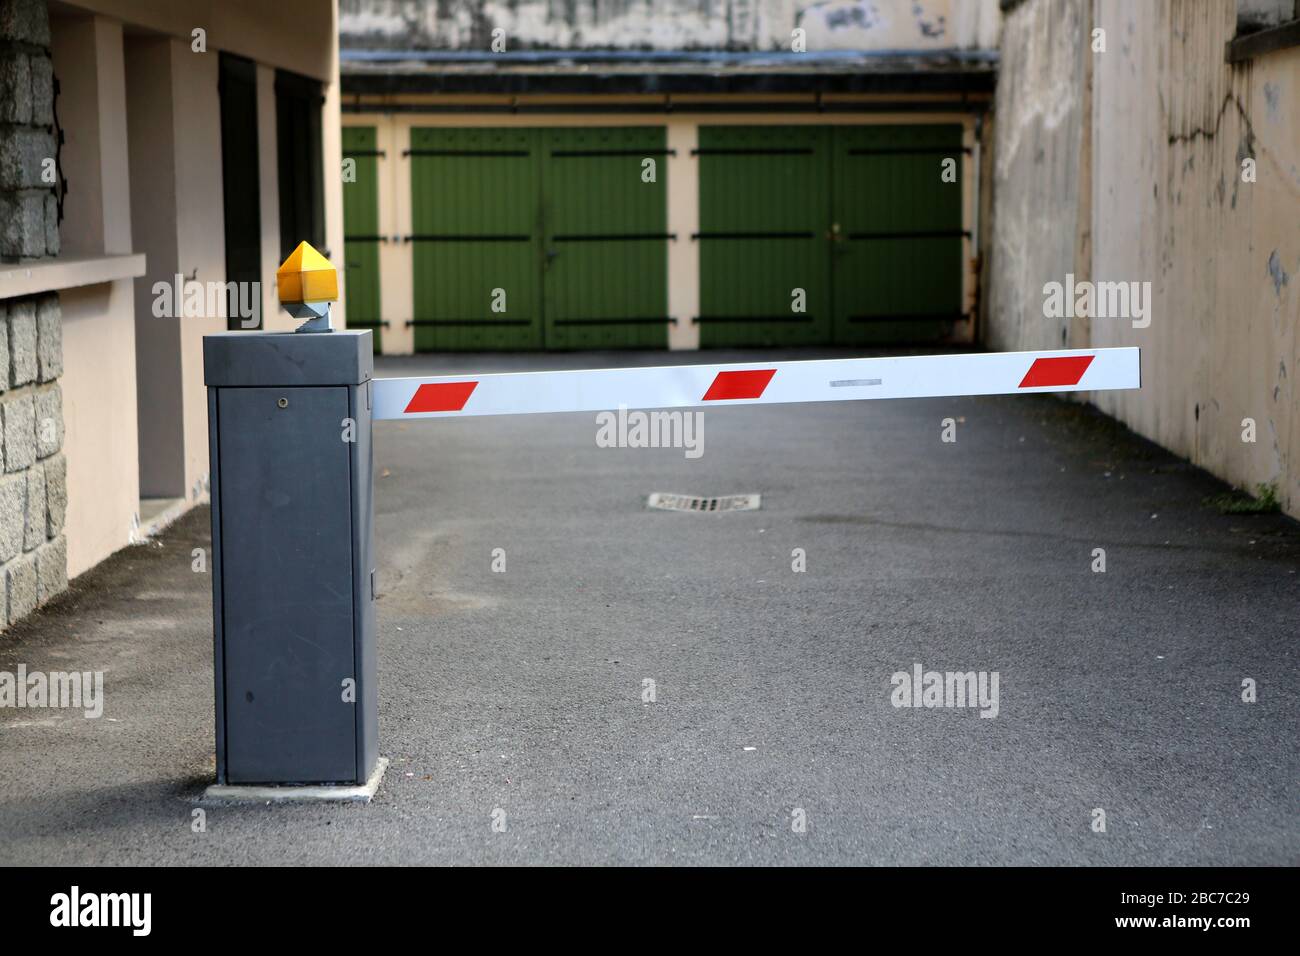 Barrière électrique interdisant l'entrée dans une résidence. Portes de garage. Saint-Gervais-les-Bains. Alta Savoia. Francia. Foto Stock